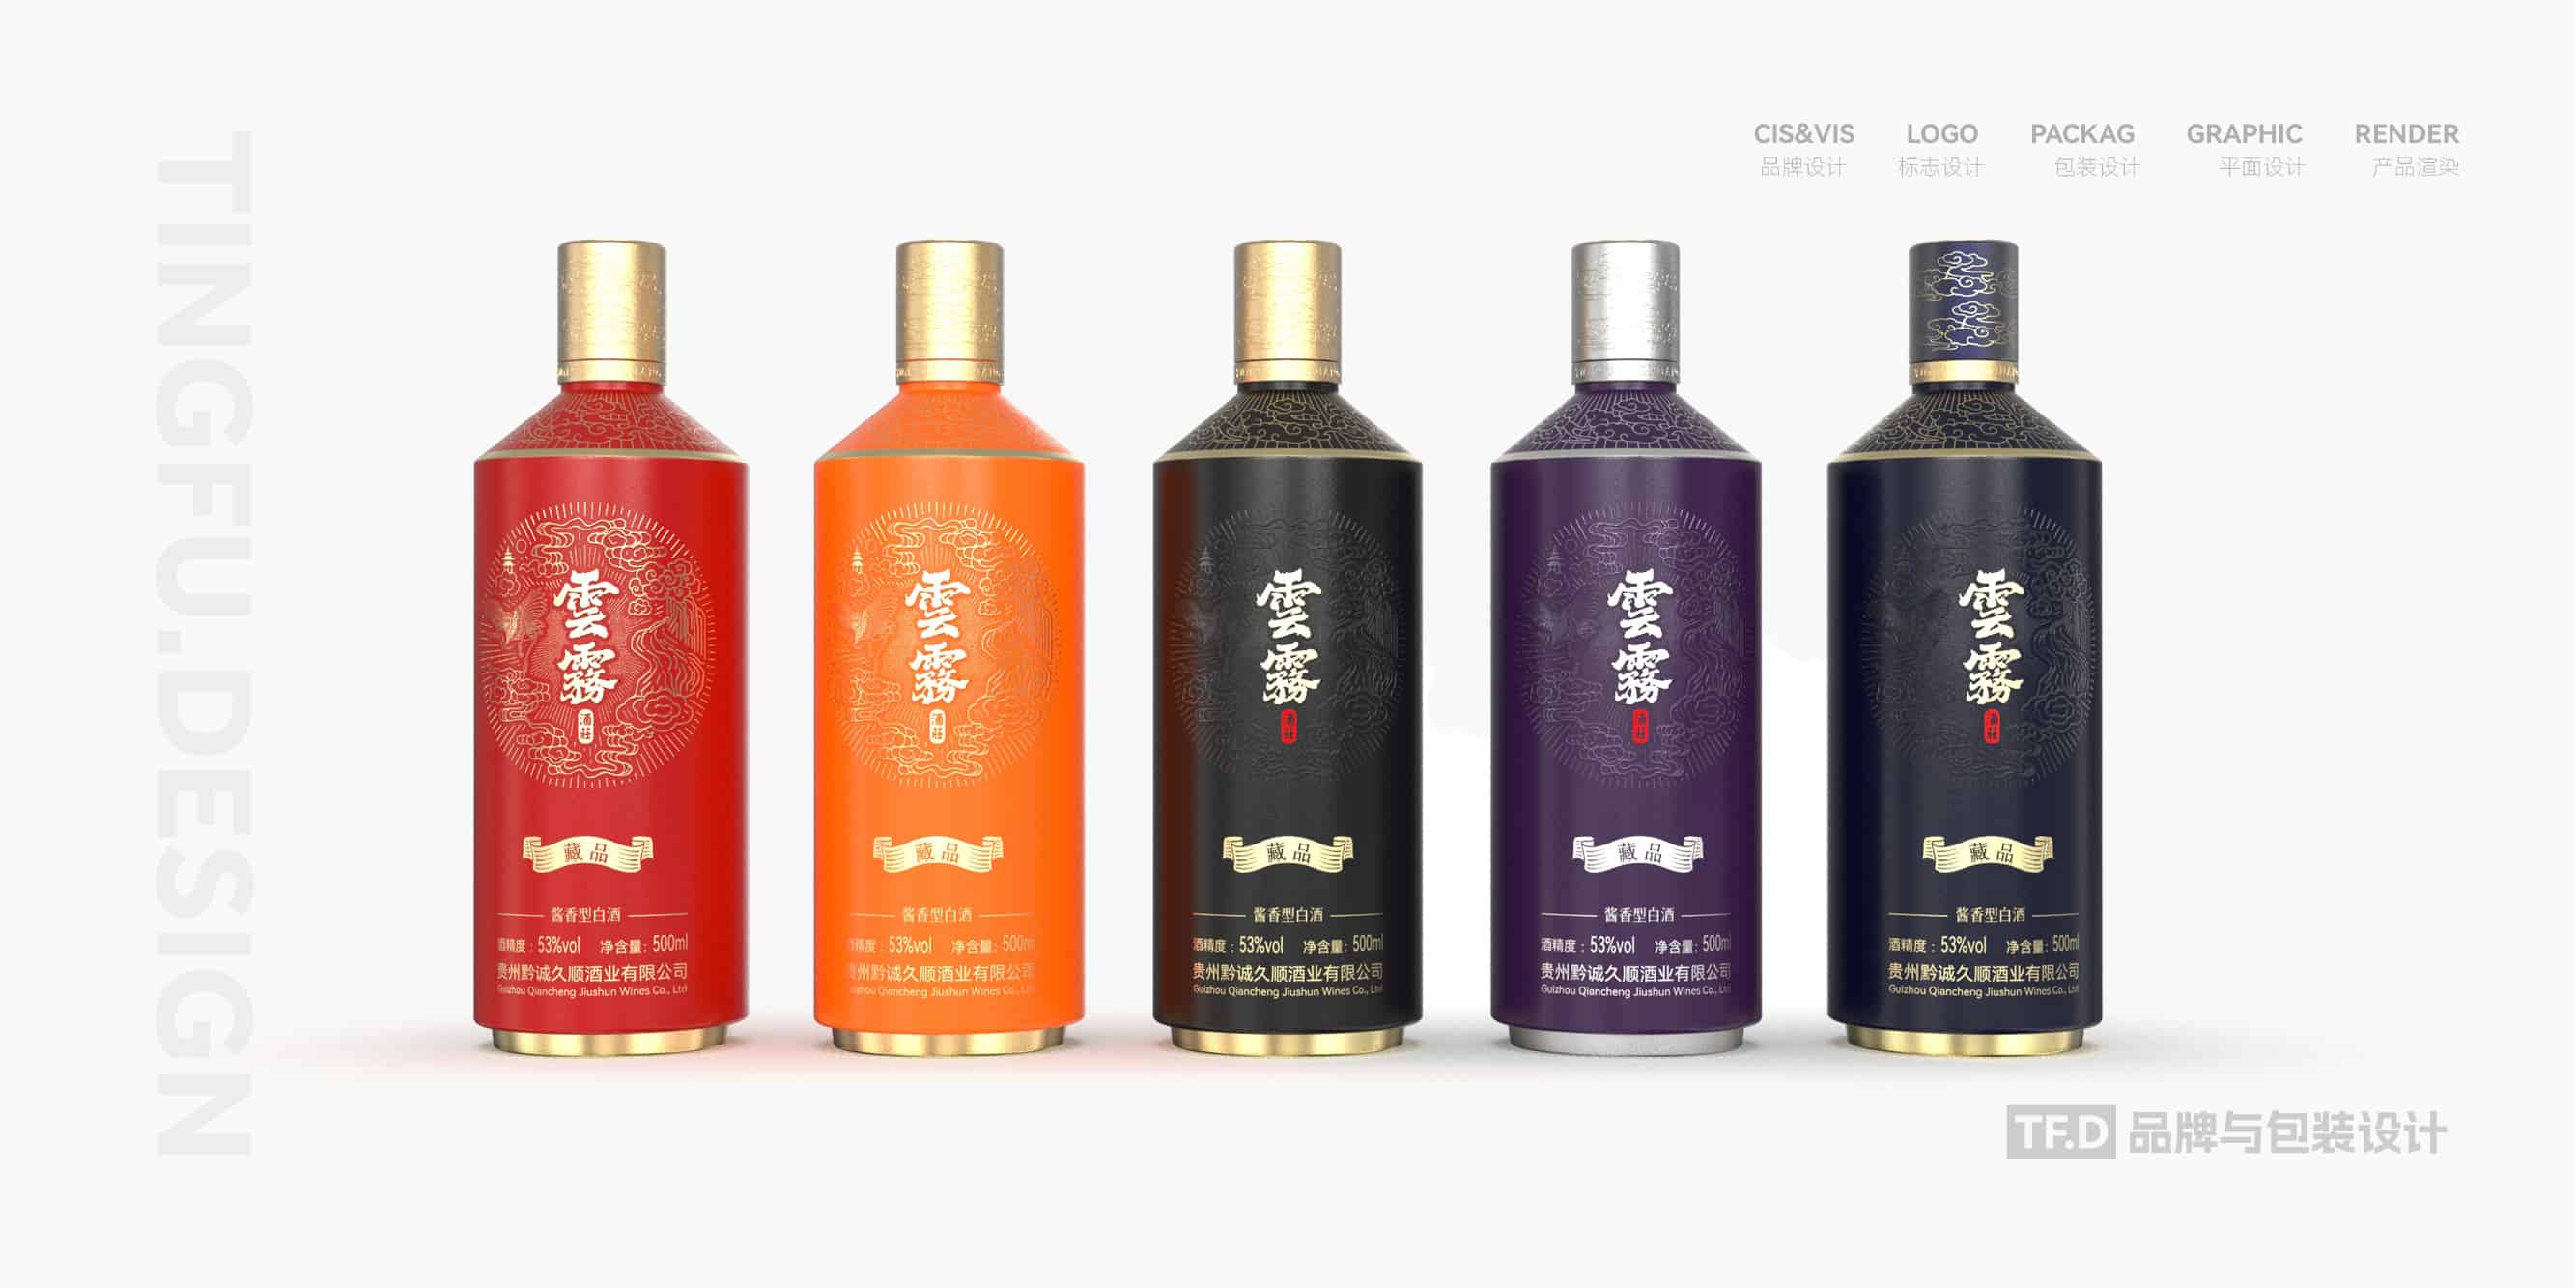 TFD品牌与包装设计-部分酒包装设计案例12-tuya.jpg